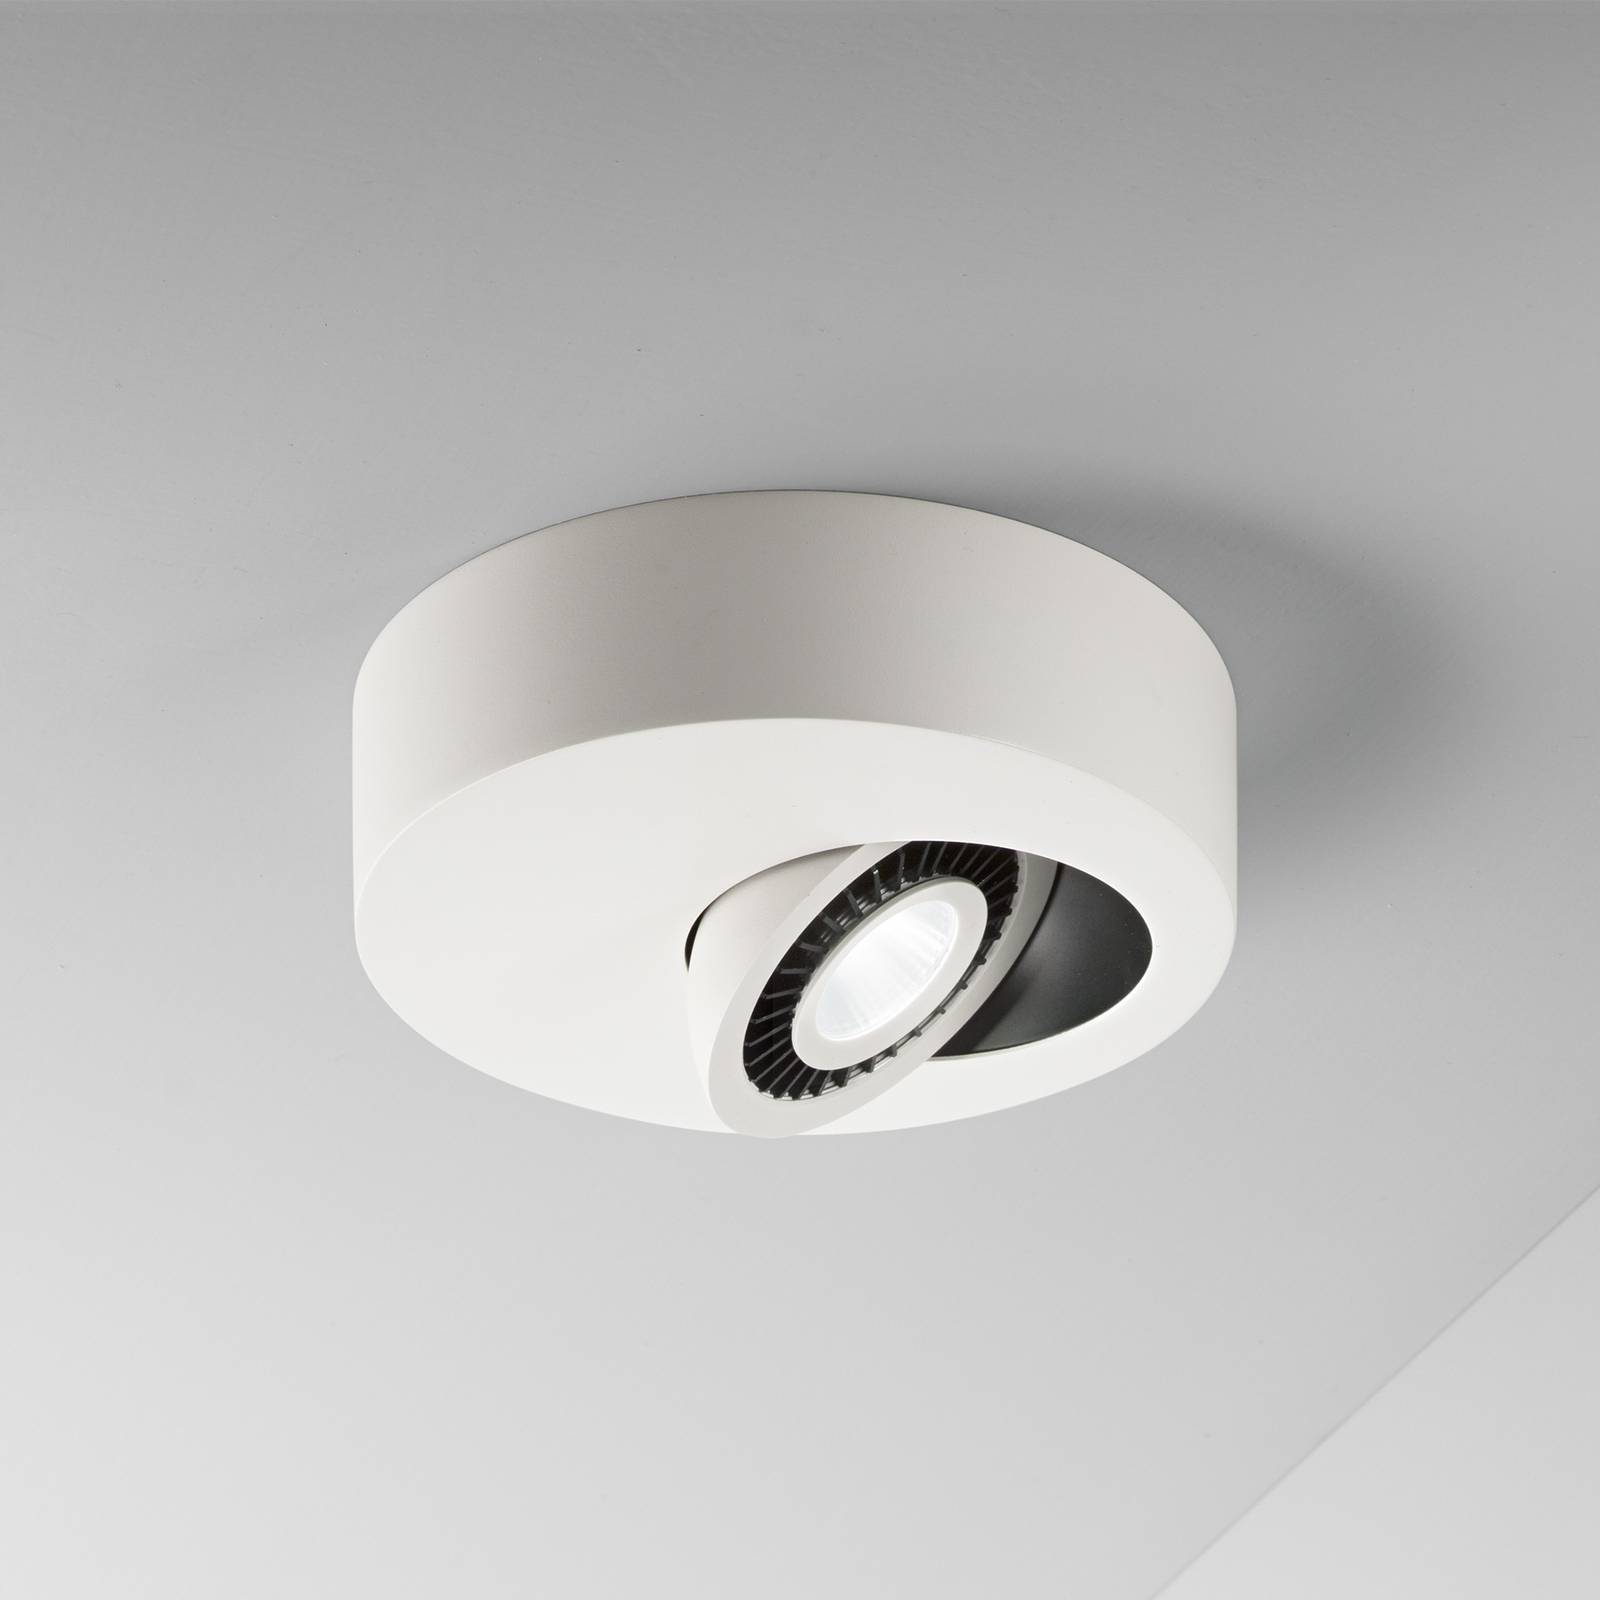 Egger Geo plafonnier LED avec spot LED, blanc